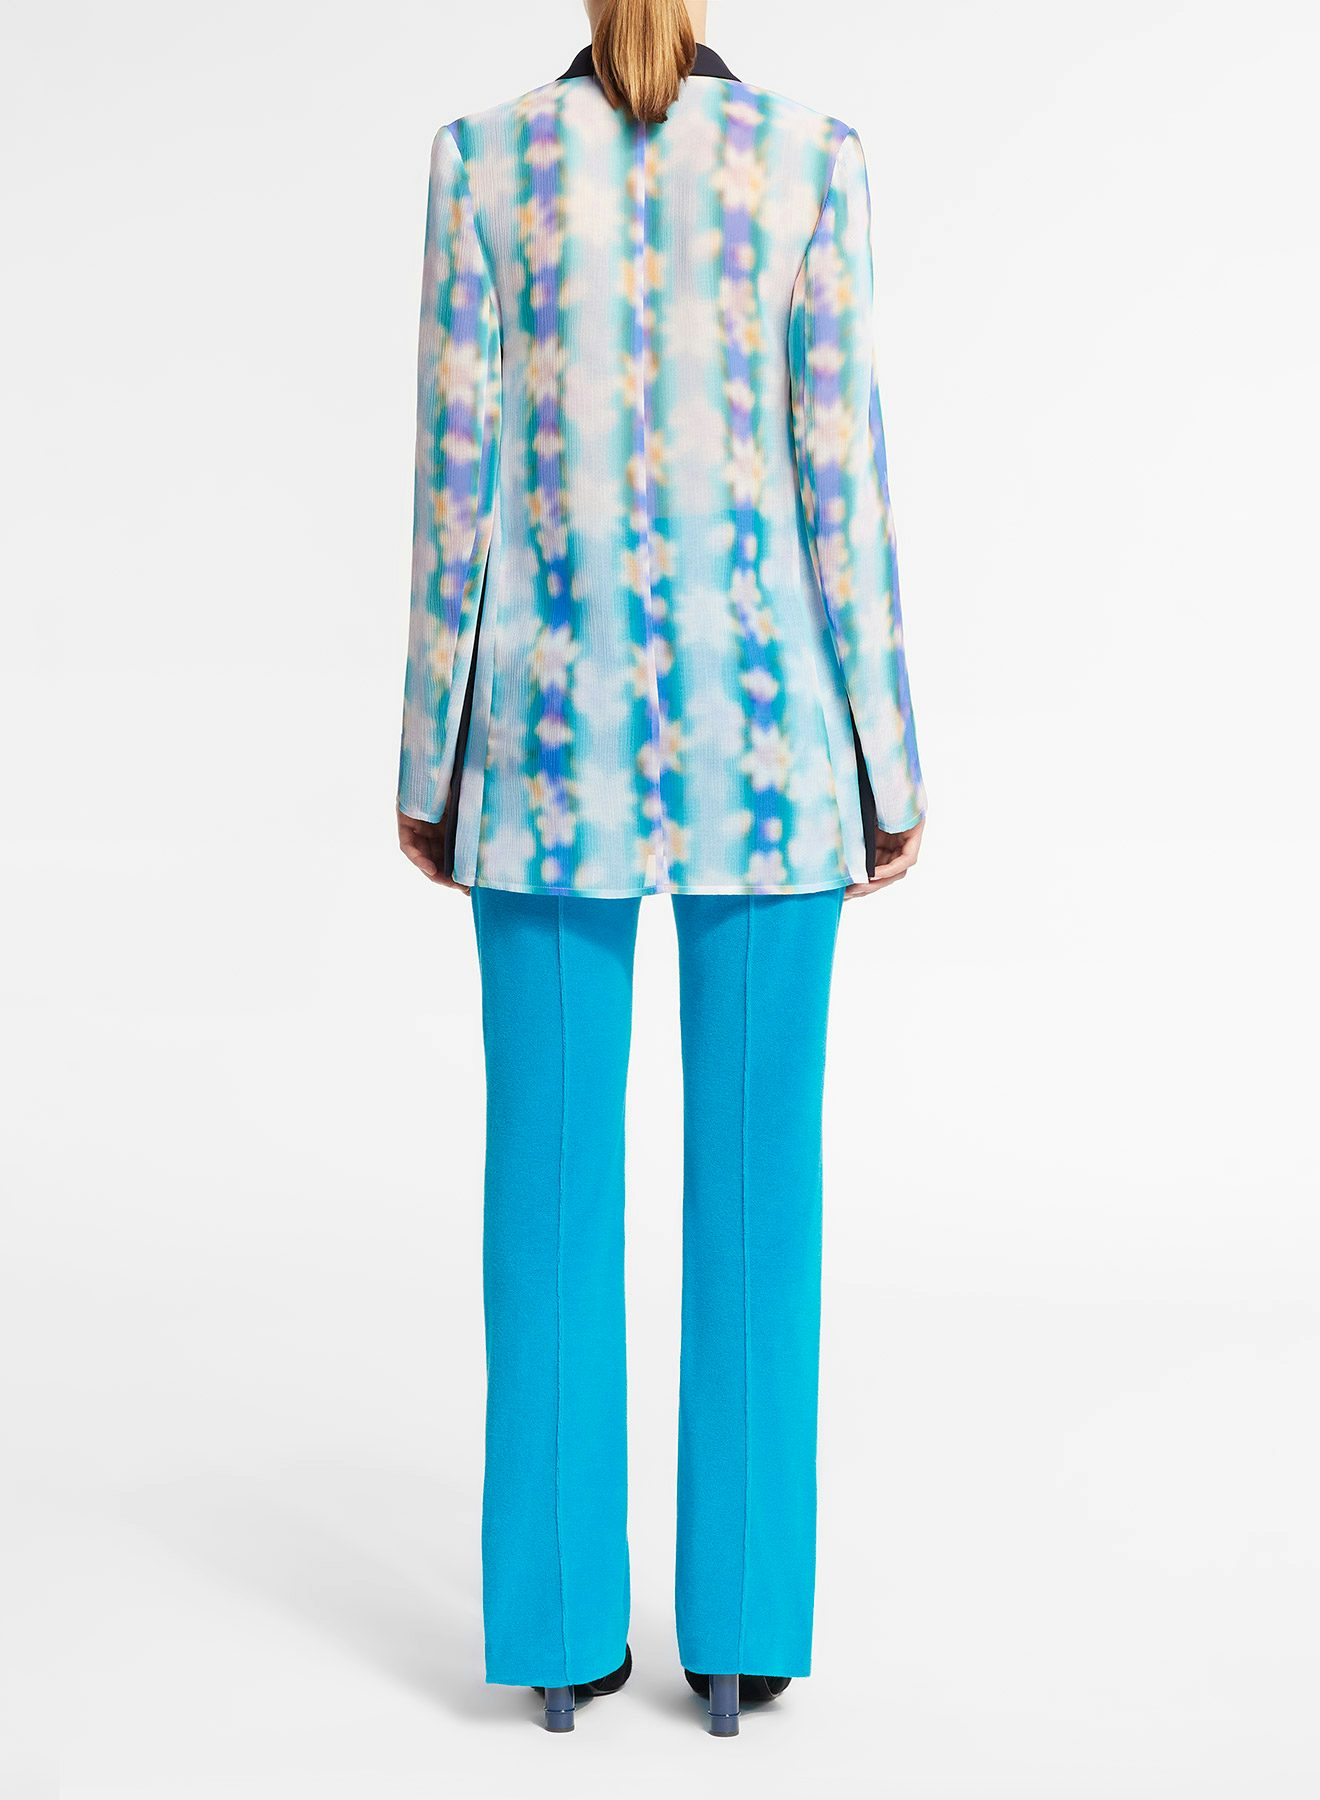 Pantalón recto de tejido de rizo azul cian con cremalleras en el bajo de las perneras - Nina Ricci